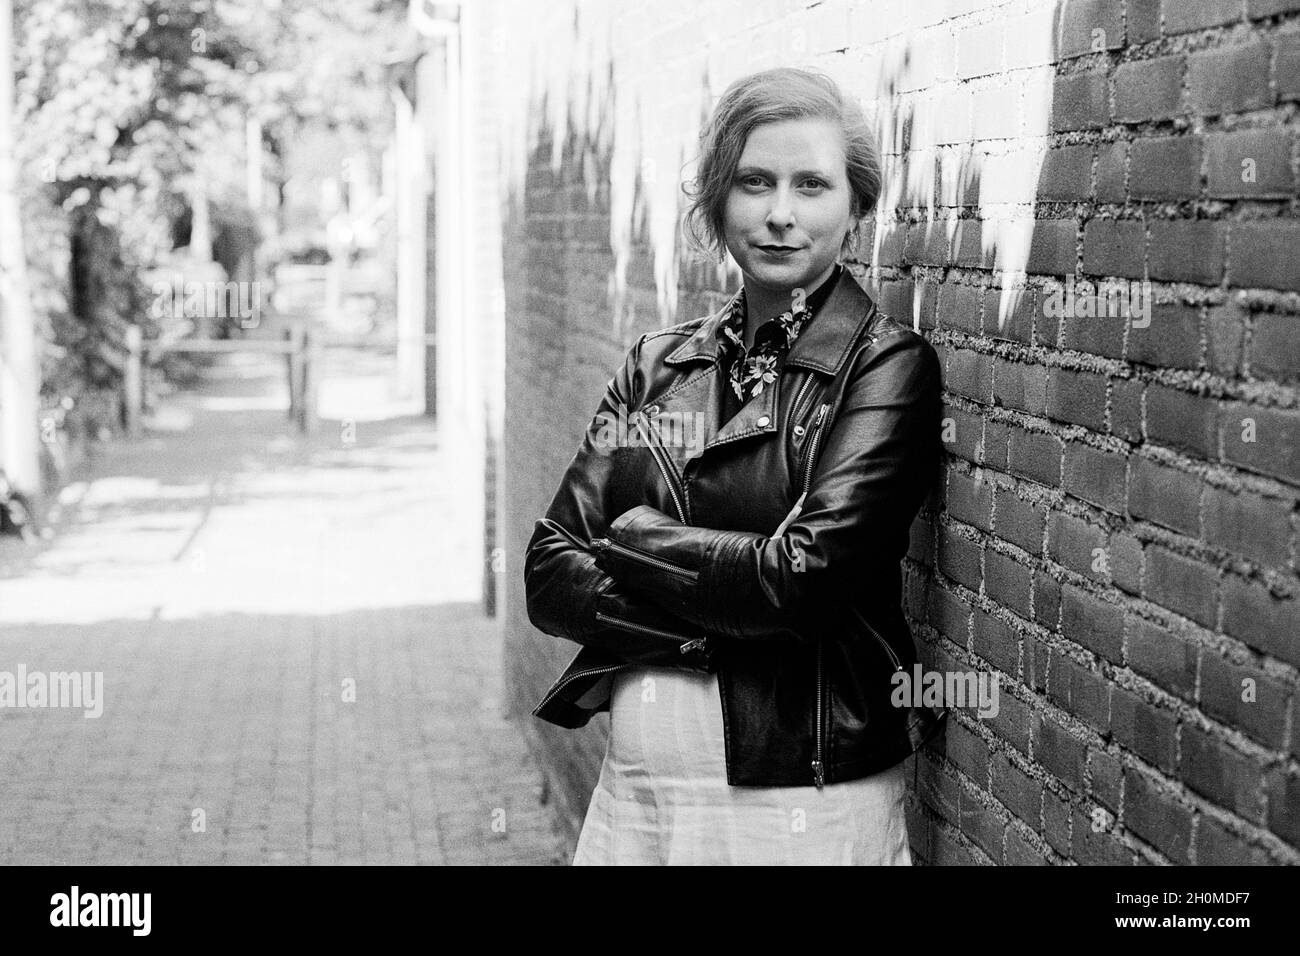 Tilburg, pays-Bas.Portrait d'une femme adulte, caucasienne, blonde se promenant à travers les néigborhes de la ville. Banque D'Images